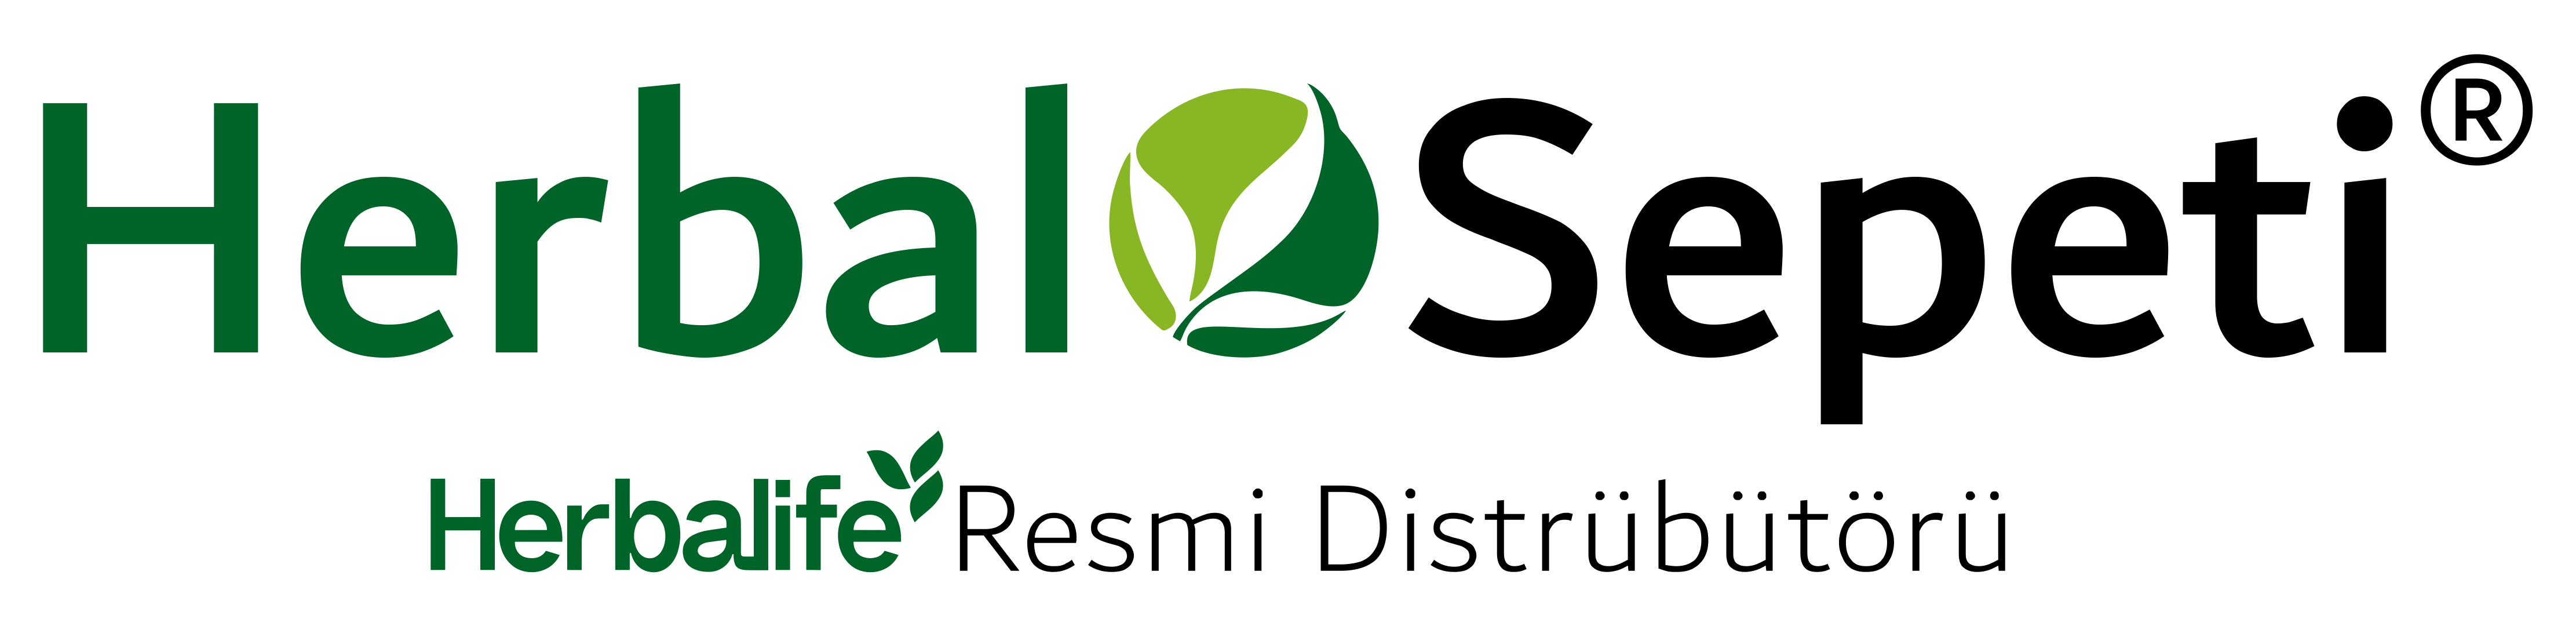 herbal-sepeti-herbalife-resmi-distrübütörü-logo